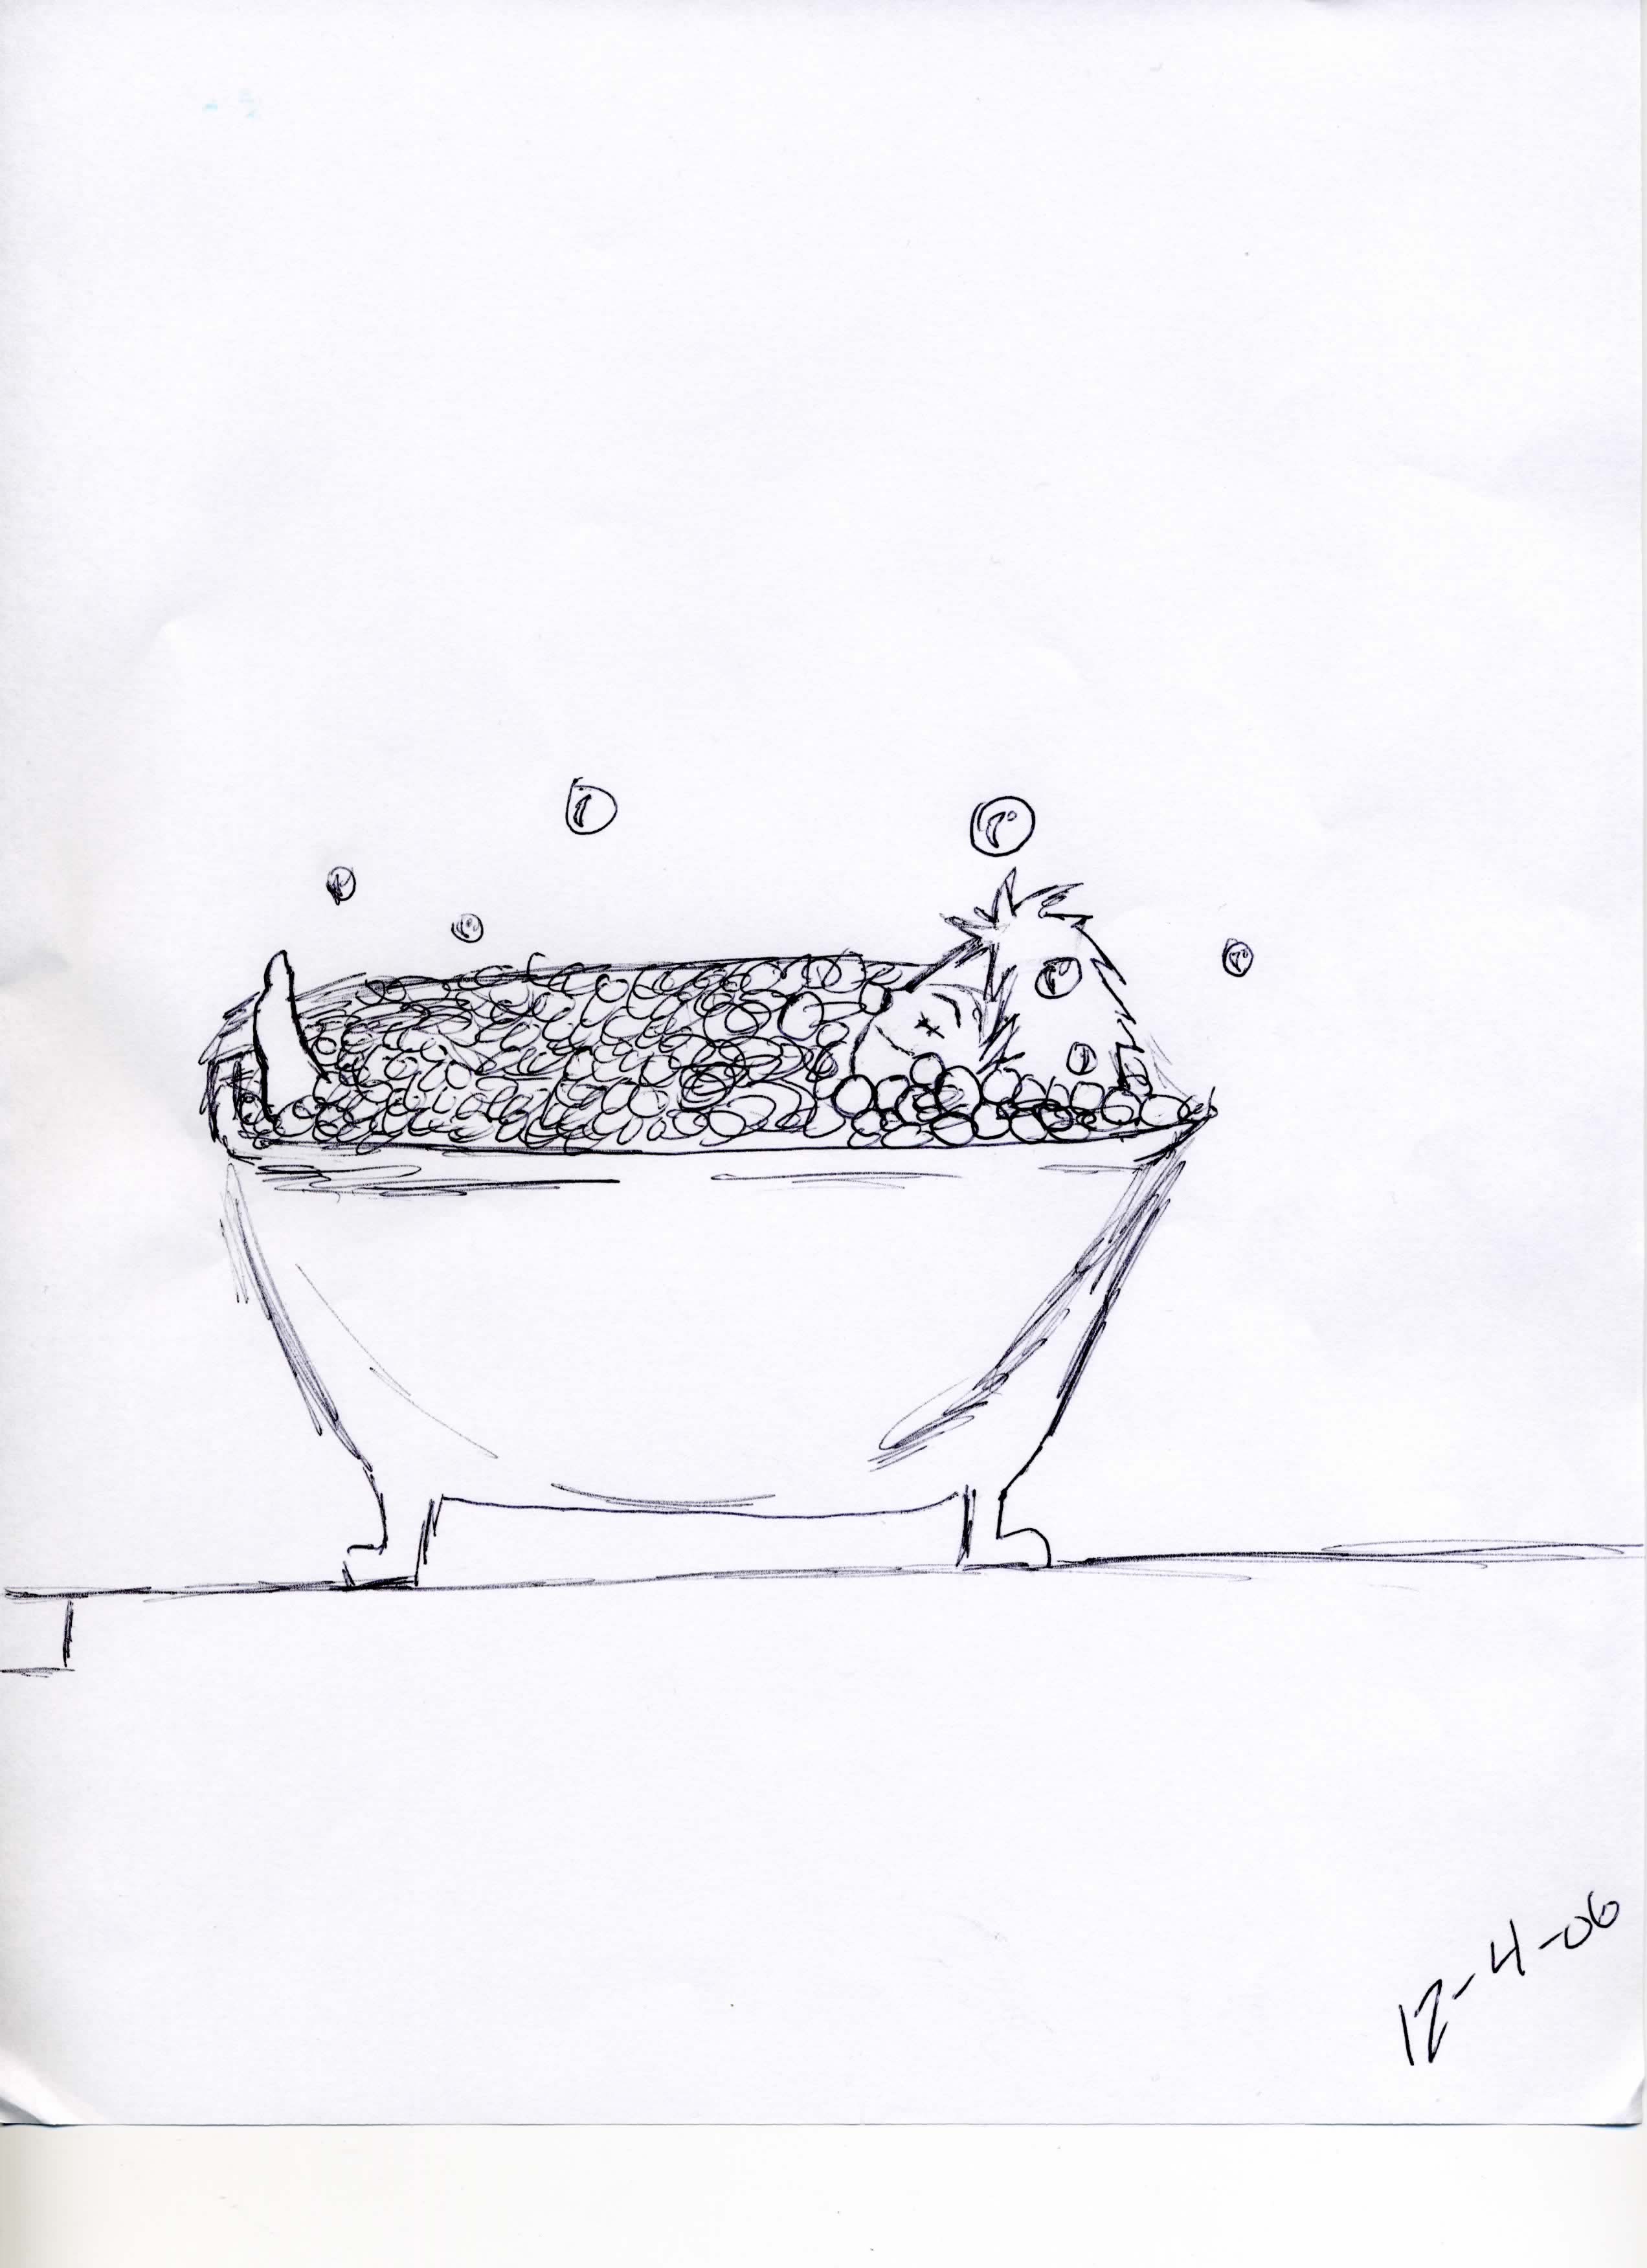 Bubble Bath! by Oddrox